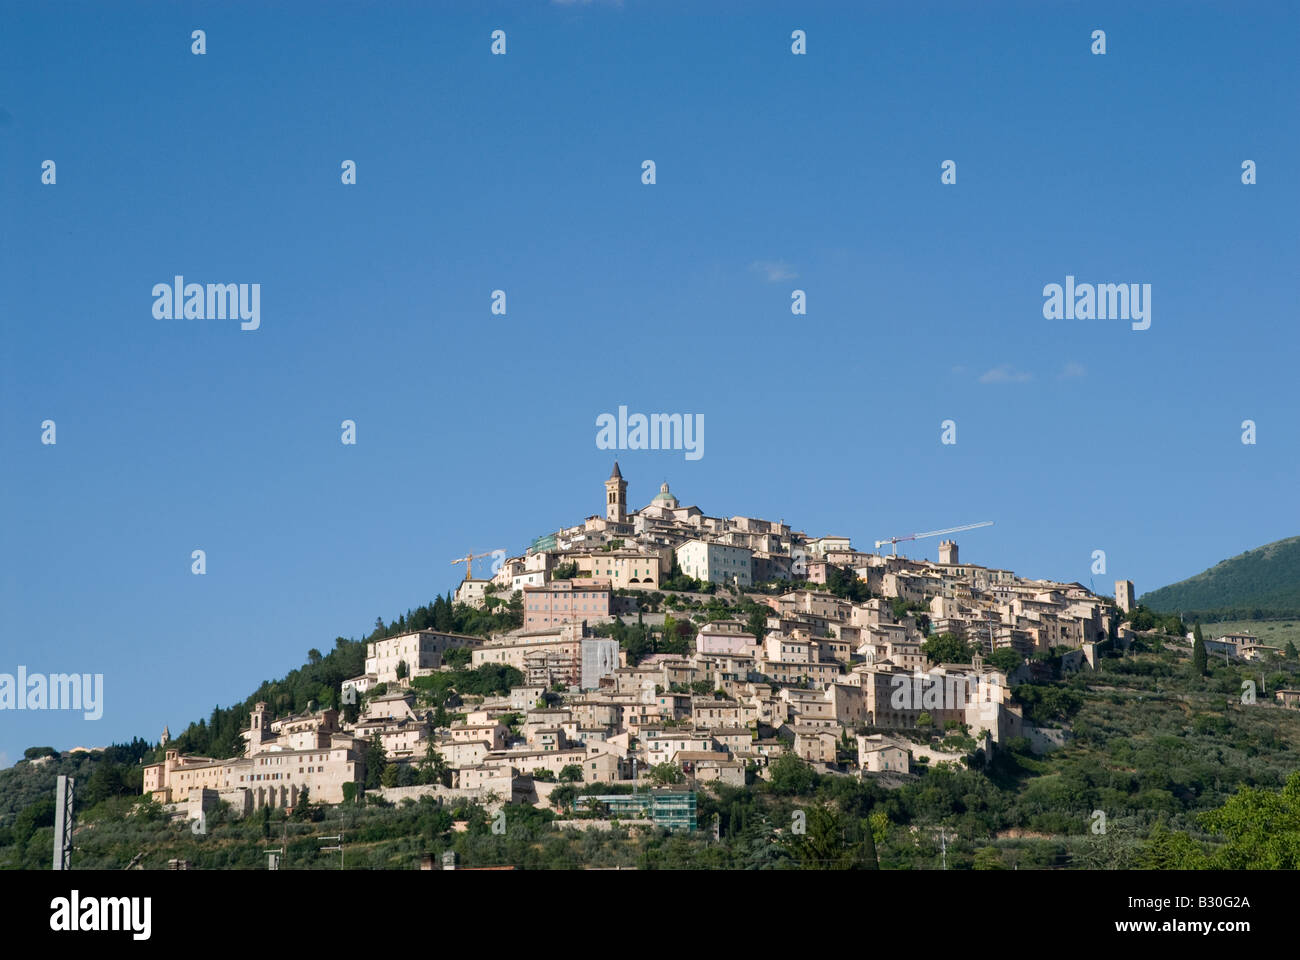 Vista in lontananza hilltop città di Trevi in Umbria, Italia. Trevi sorge, come la maggior parte dei villaggi medievali nella zona, su di una collina in una posizione dominante rispetto alla pianura dove scorre il Clitunno. Foto Stock